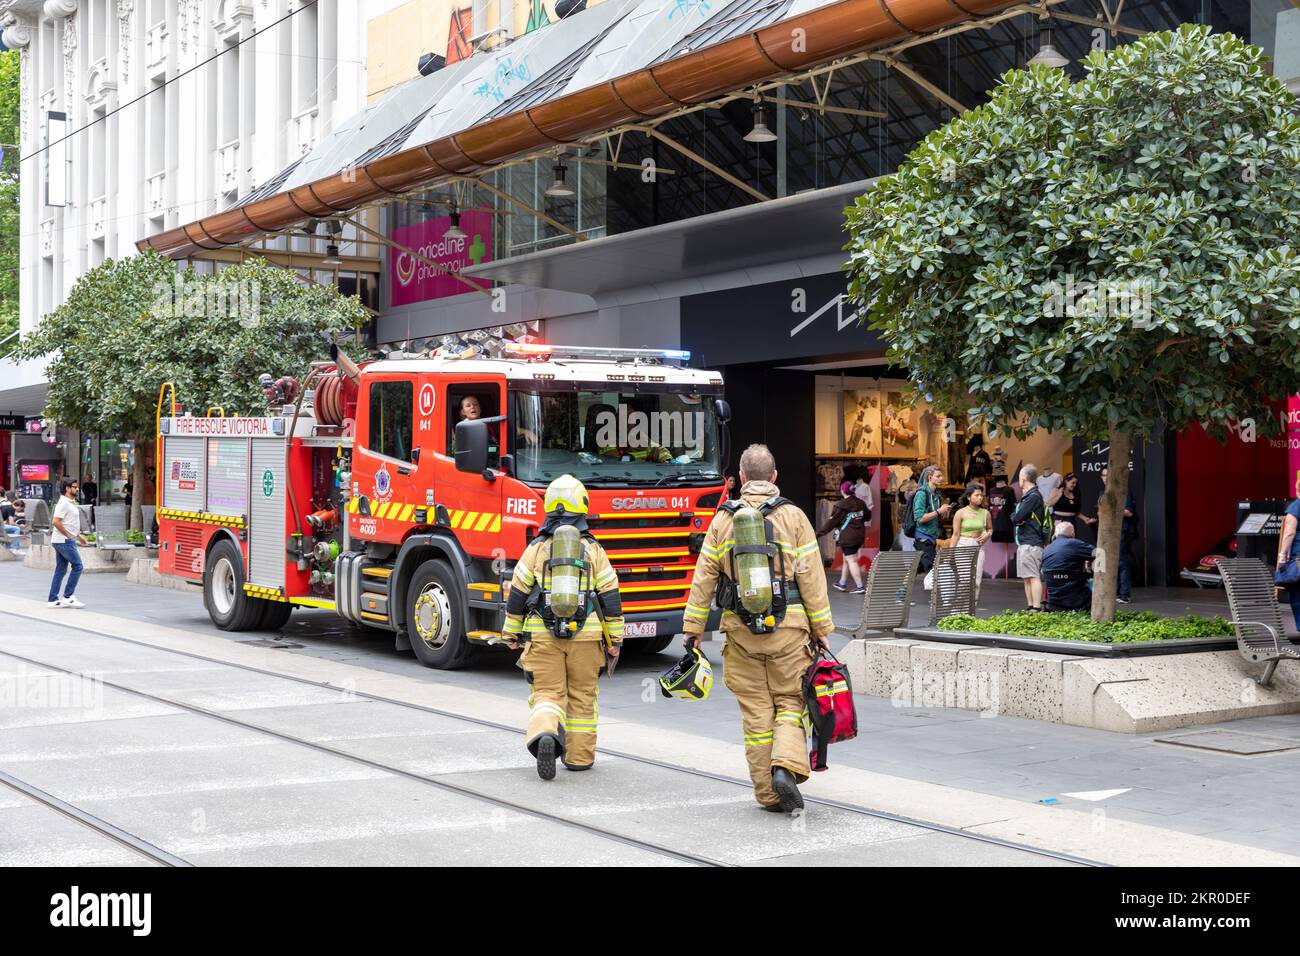 Melbourne Vic Fire Rescue Victoria et Fire Engine, femme et homme pompiers officiers avec femme conduite Fire Engine,Melbourne,Australie 2022 Banque D'Images